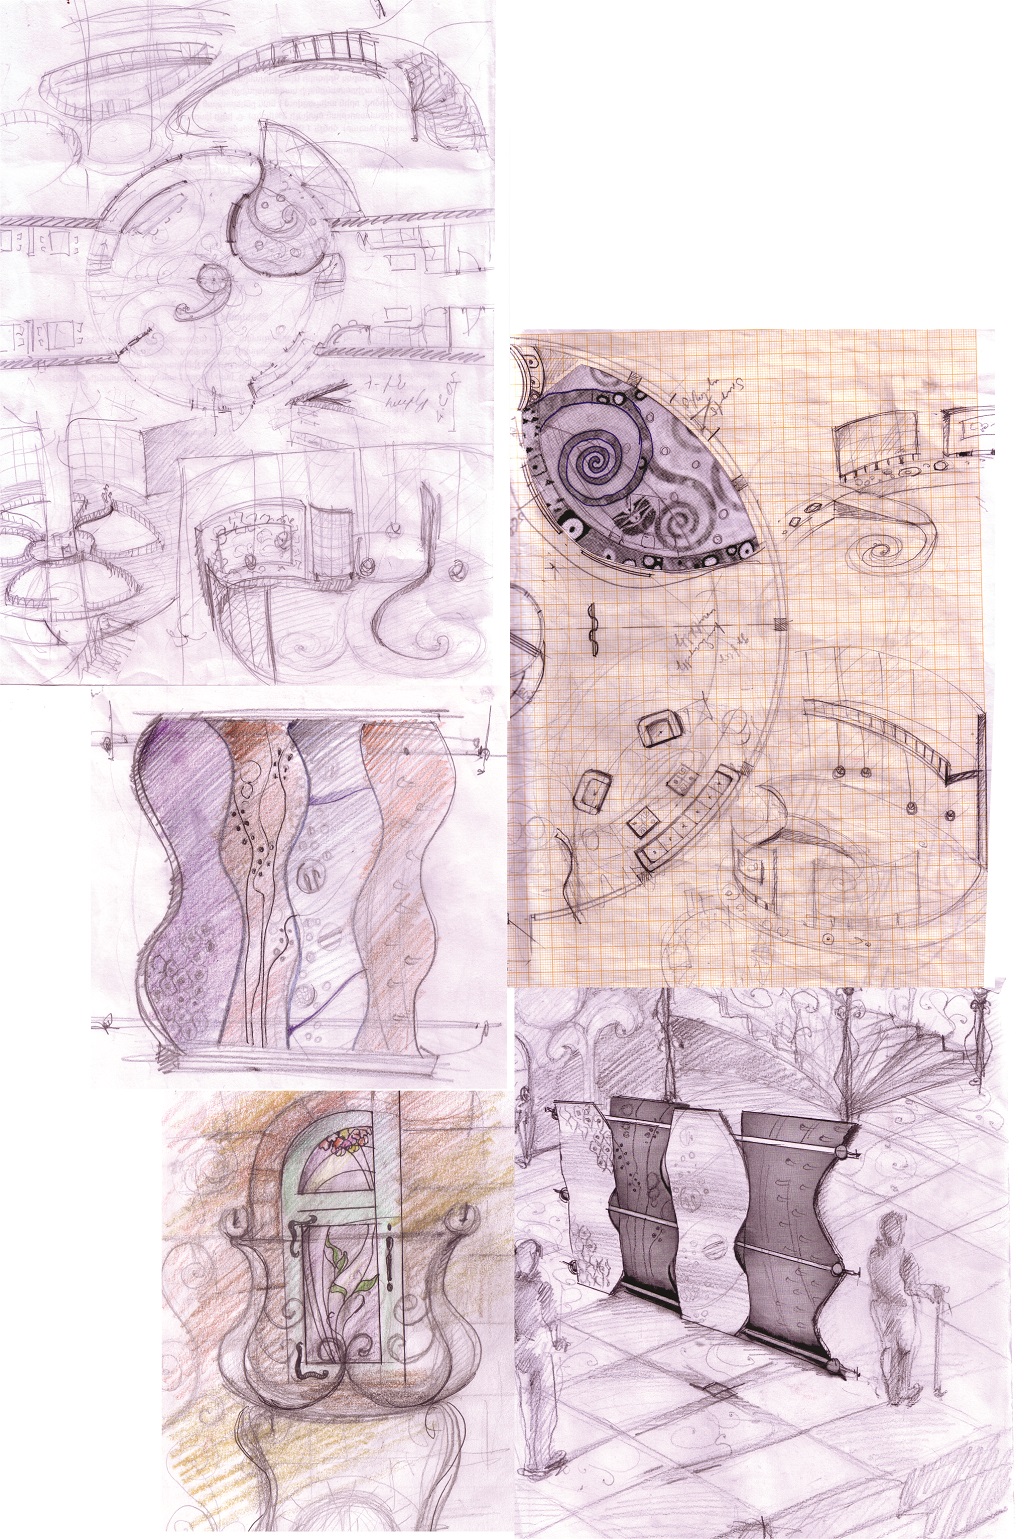 Hotel "Klimt" interior design sketches